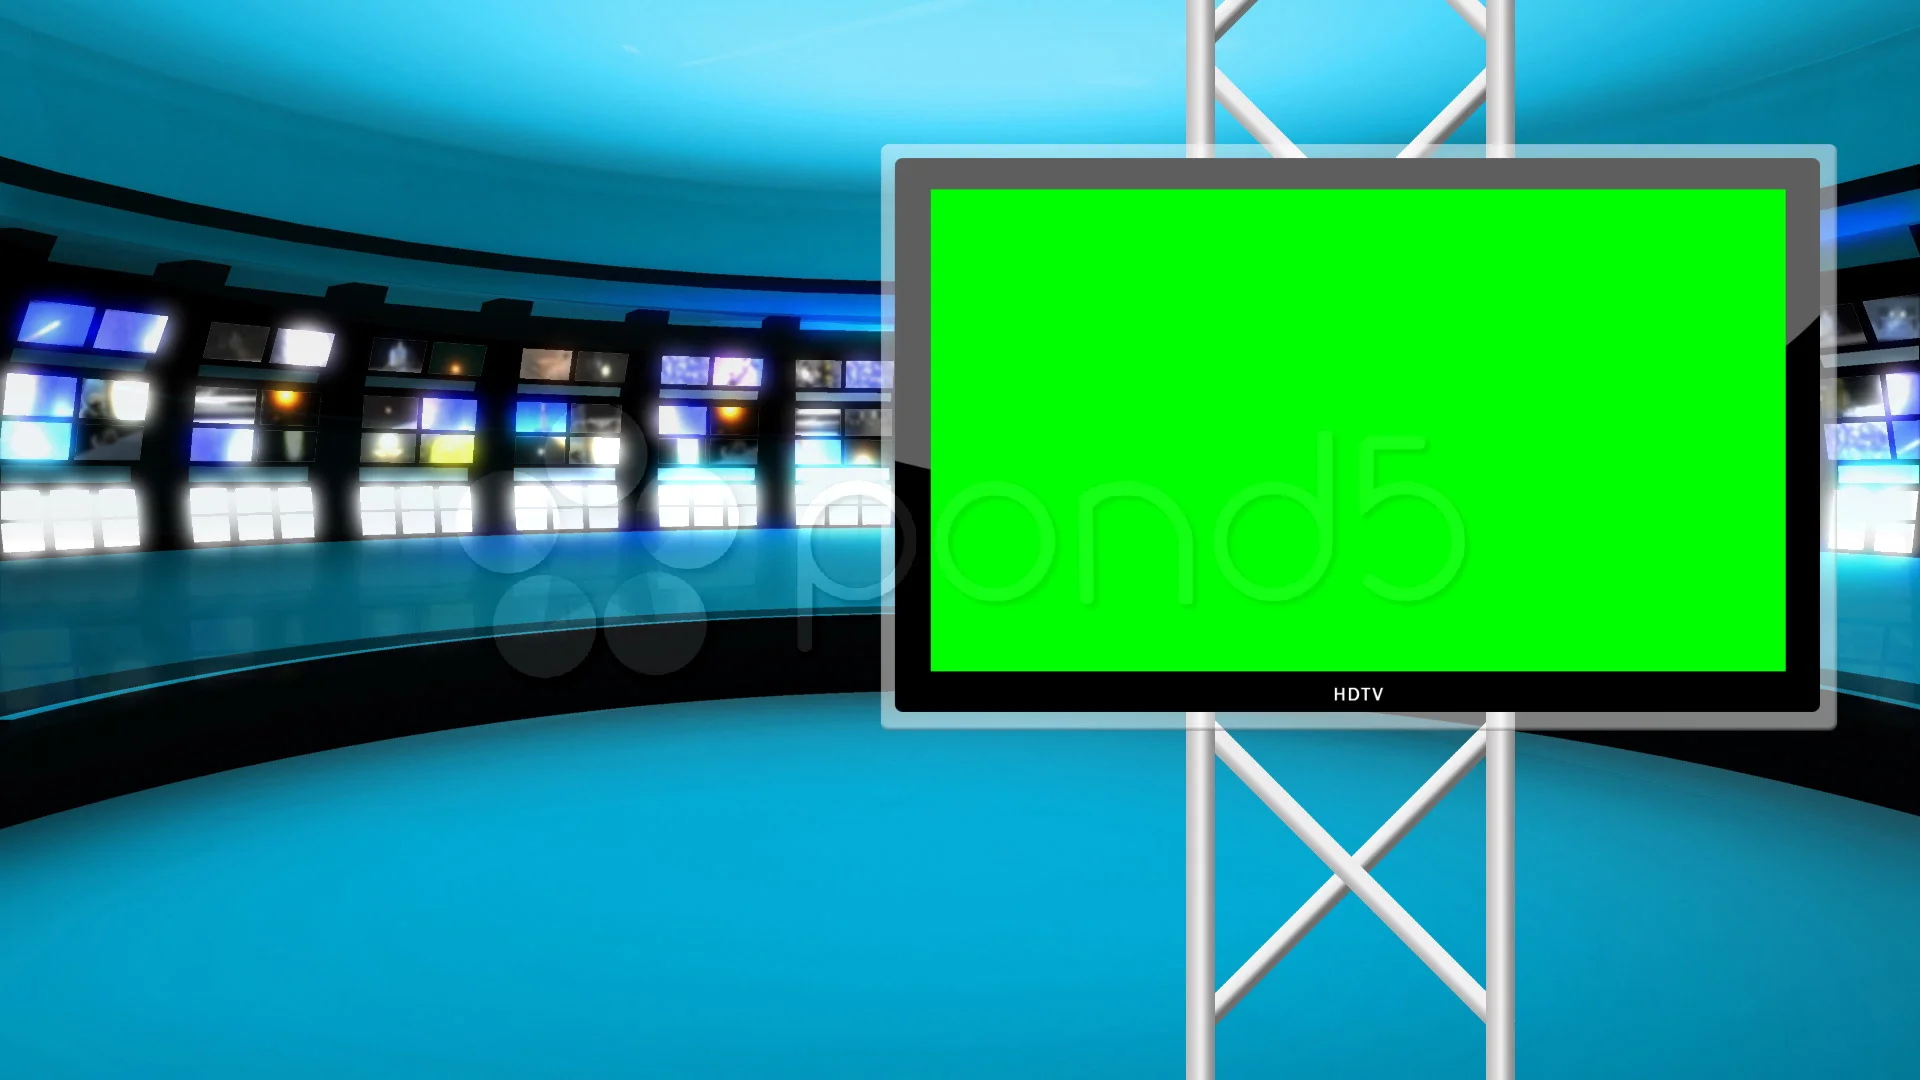 Virtual news studio with green screen là lựa chọn hoàn hảo cho những ai muốn sản xuất bản tin truyền hình chuyên nghiệp. Hãy xem hình ảnh liên quan để chiêm ngưỡng vẻ đẹp của Virtual news studio với màn hình xanh đa năng.